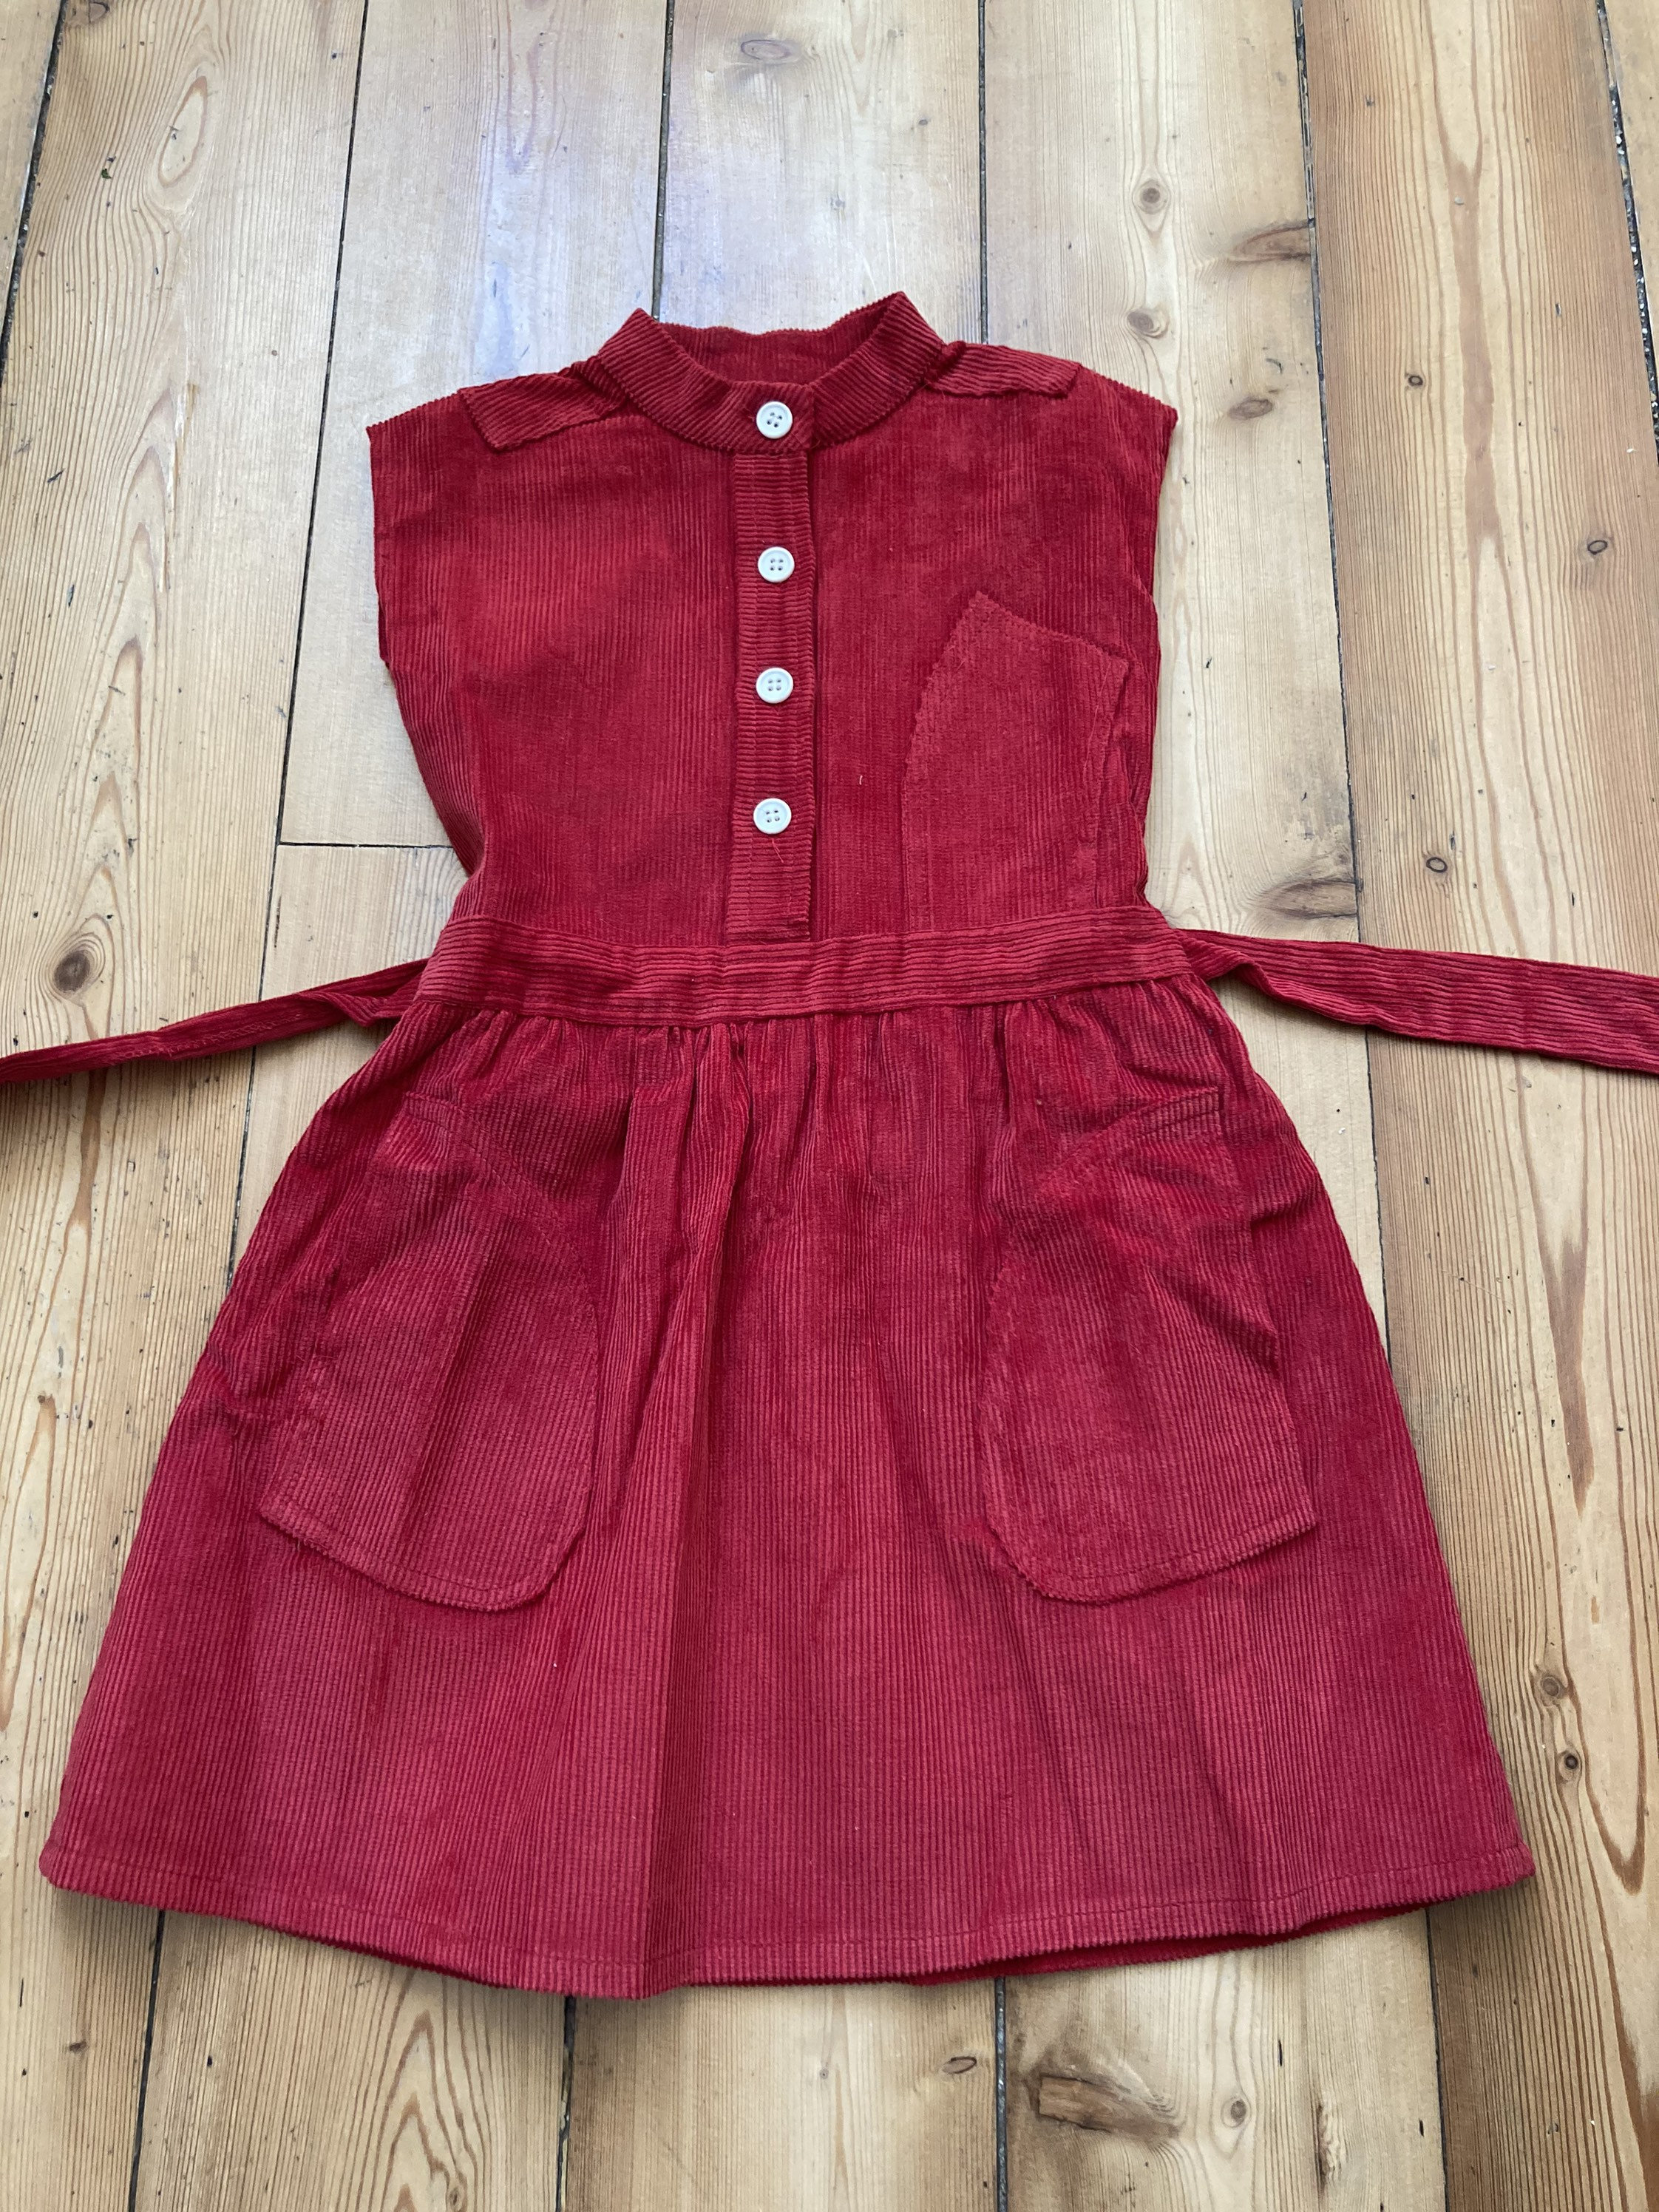 Vintage 1970s Corduroy dress size range age 6-13 years | Etsy